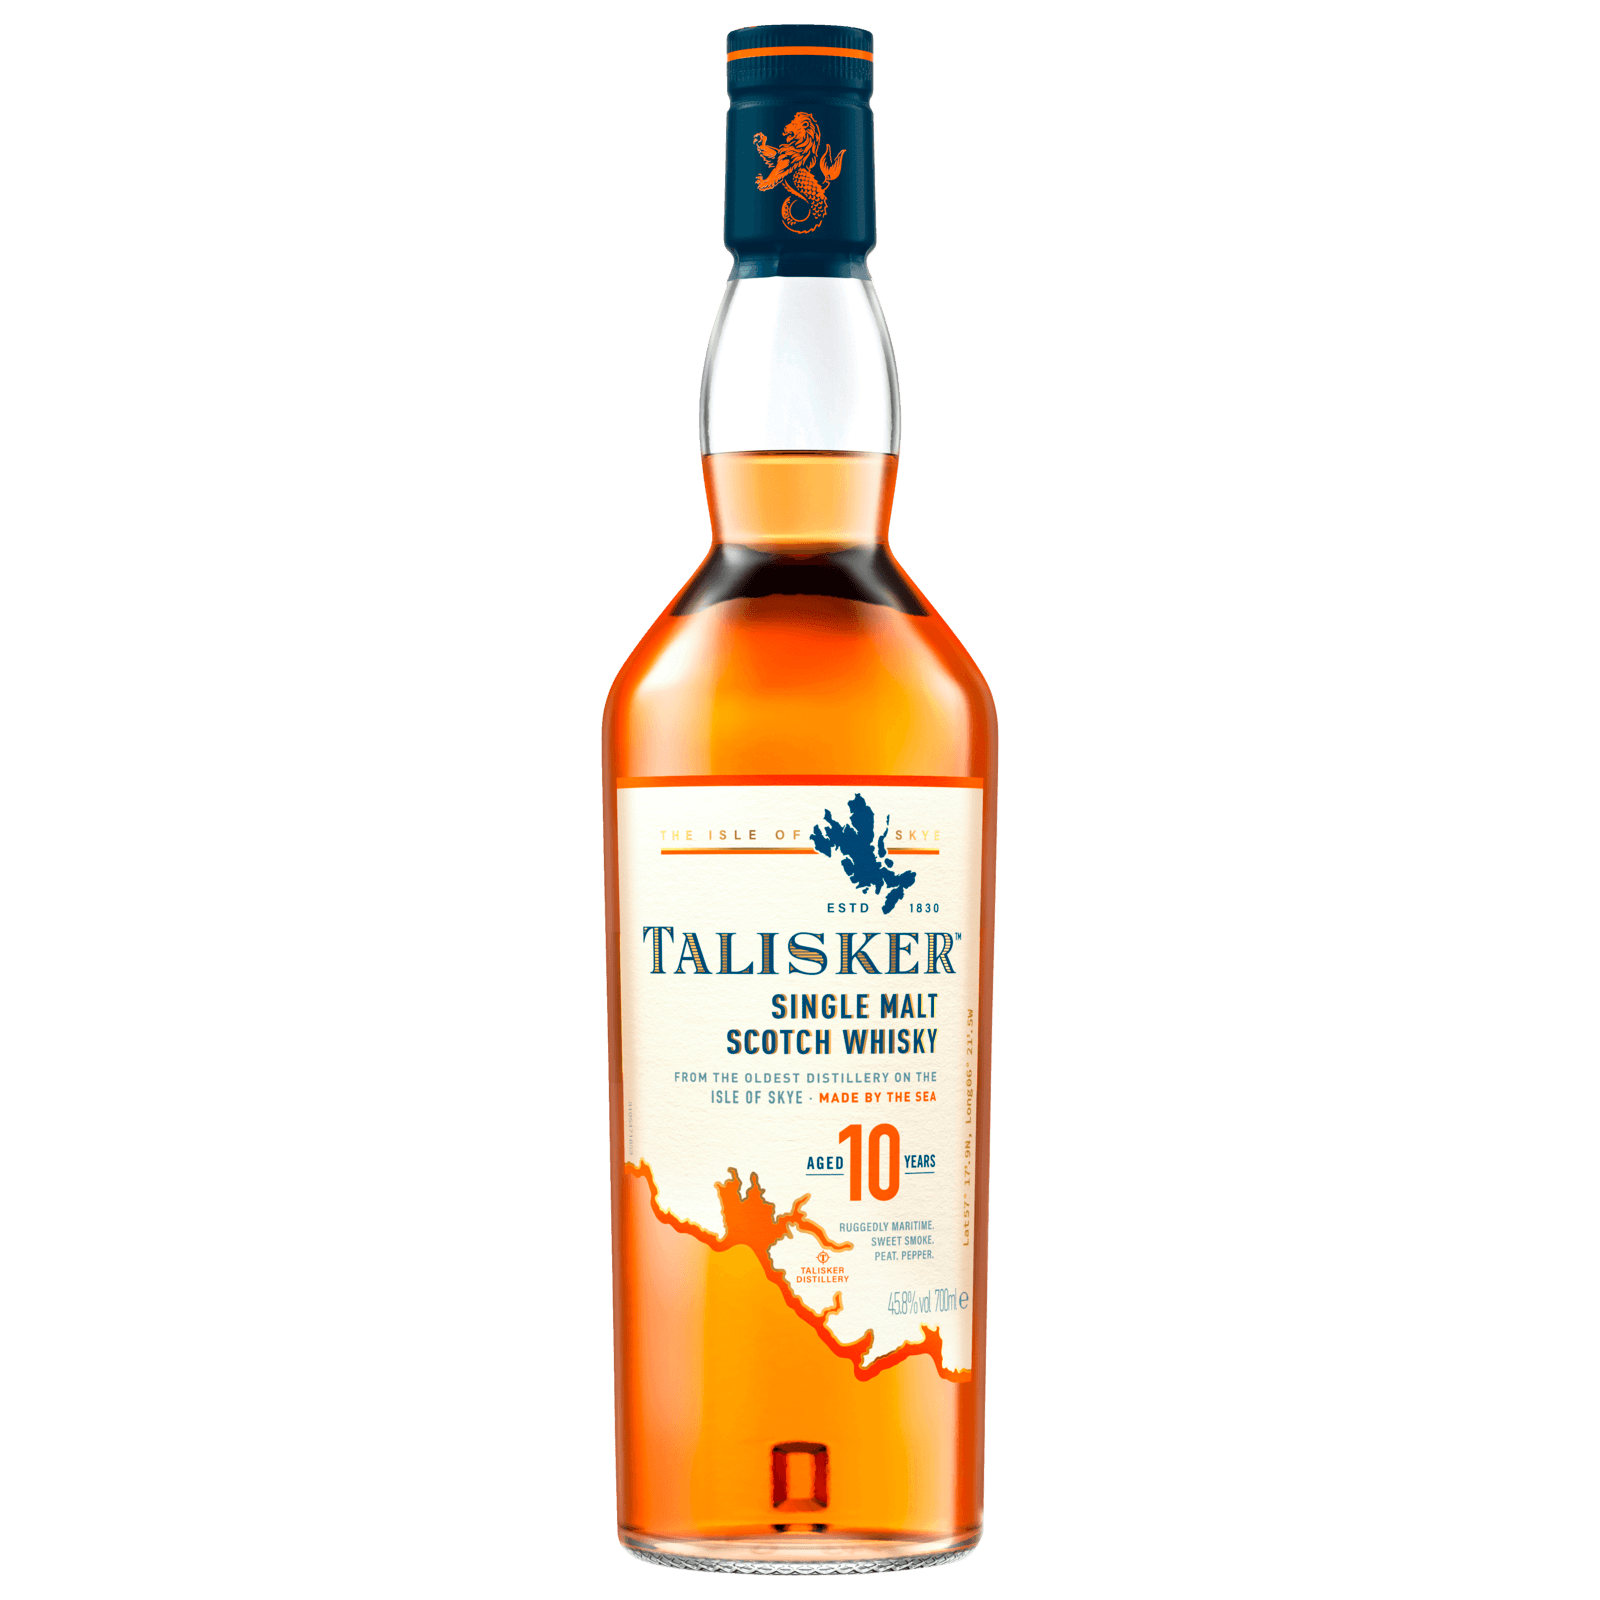 Talisker Single Malt Scotch Whisky 07l Bei Rewe Online Bestellen 